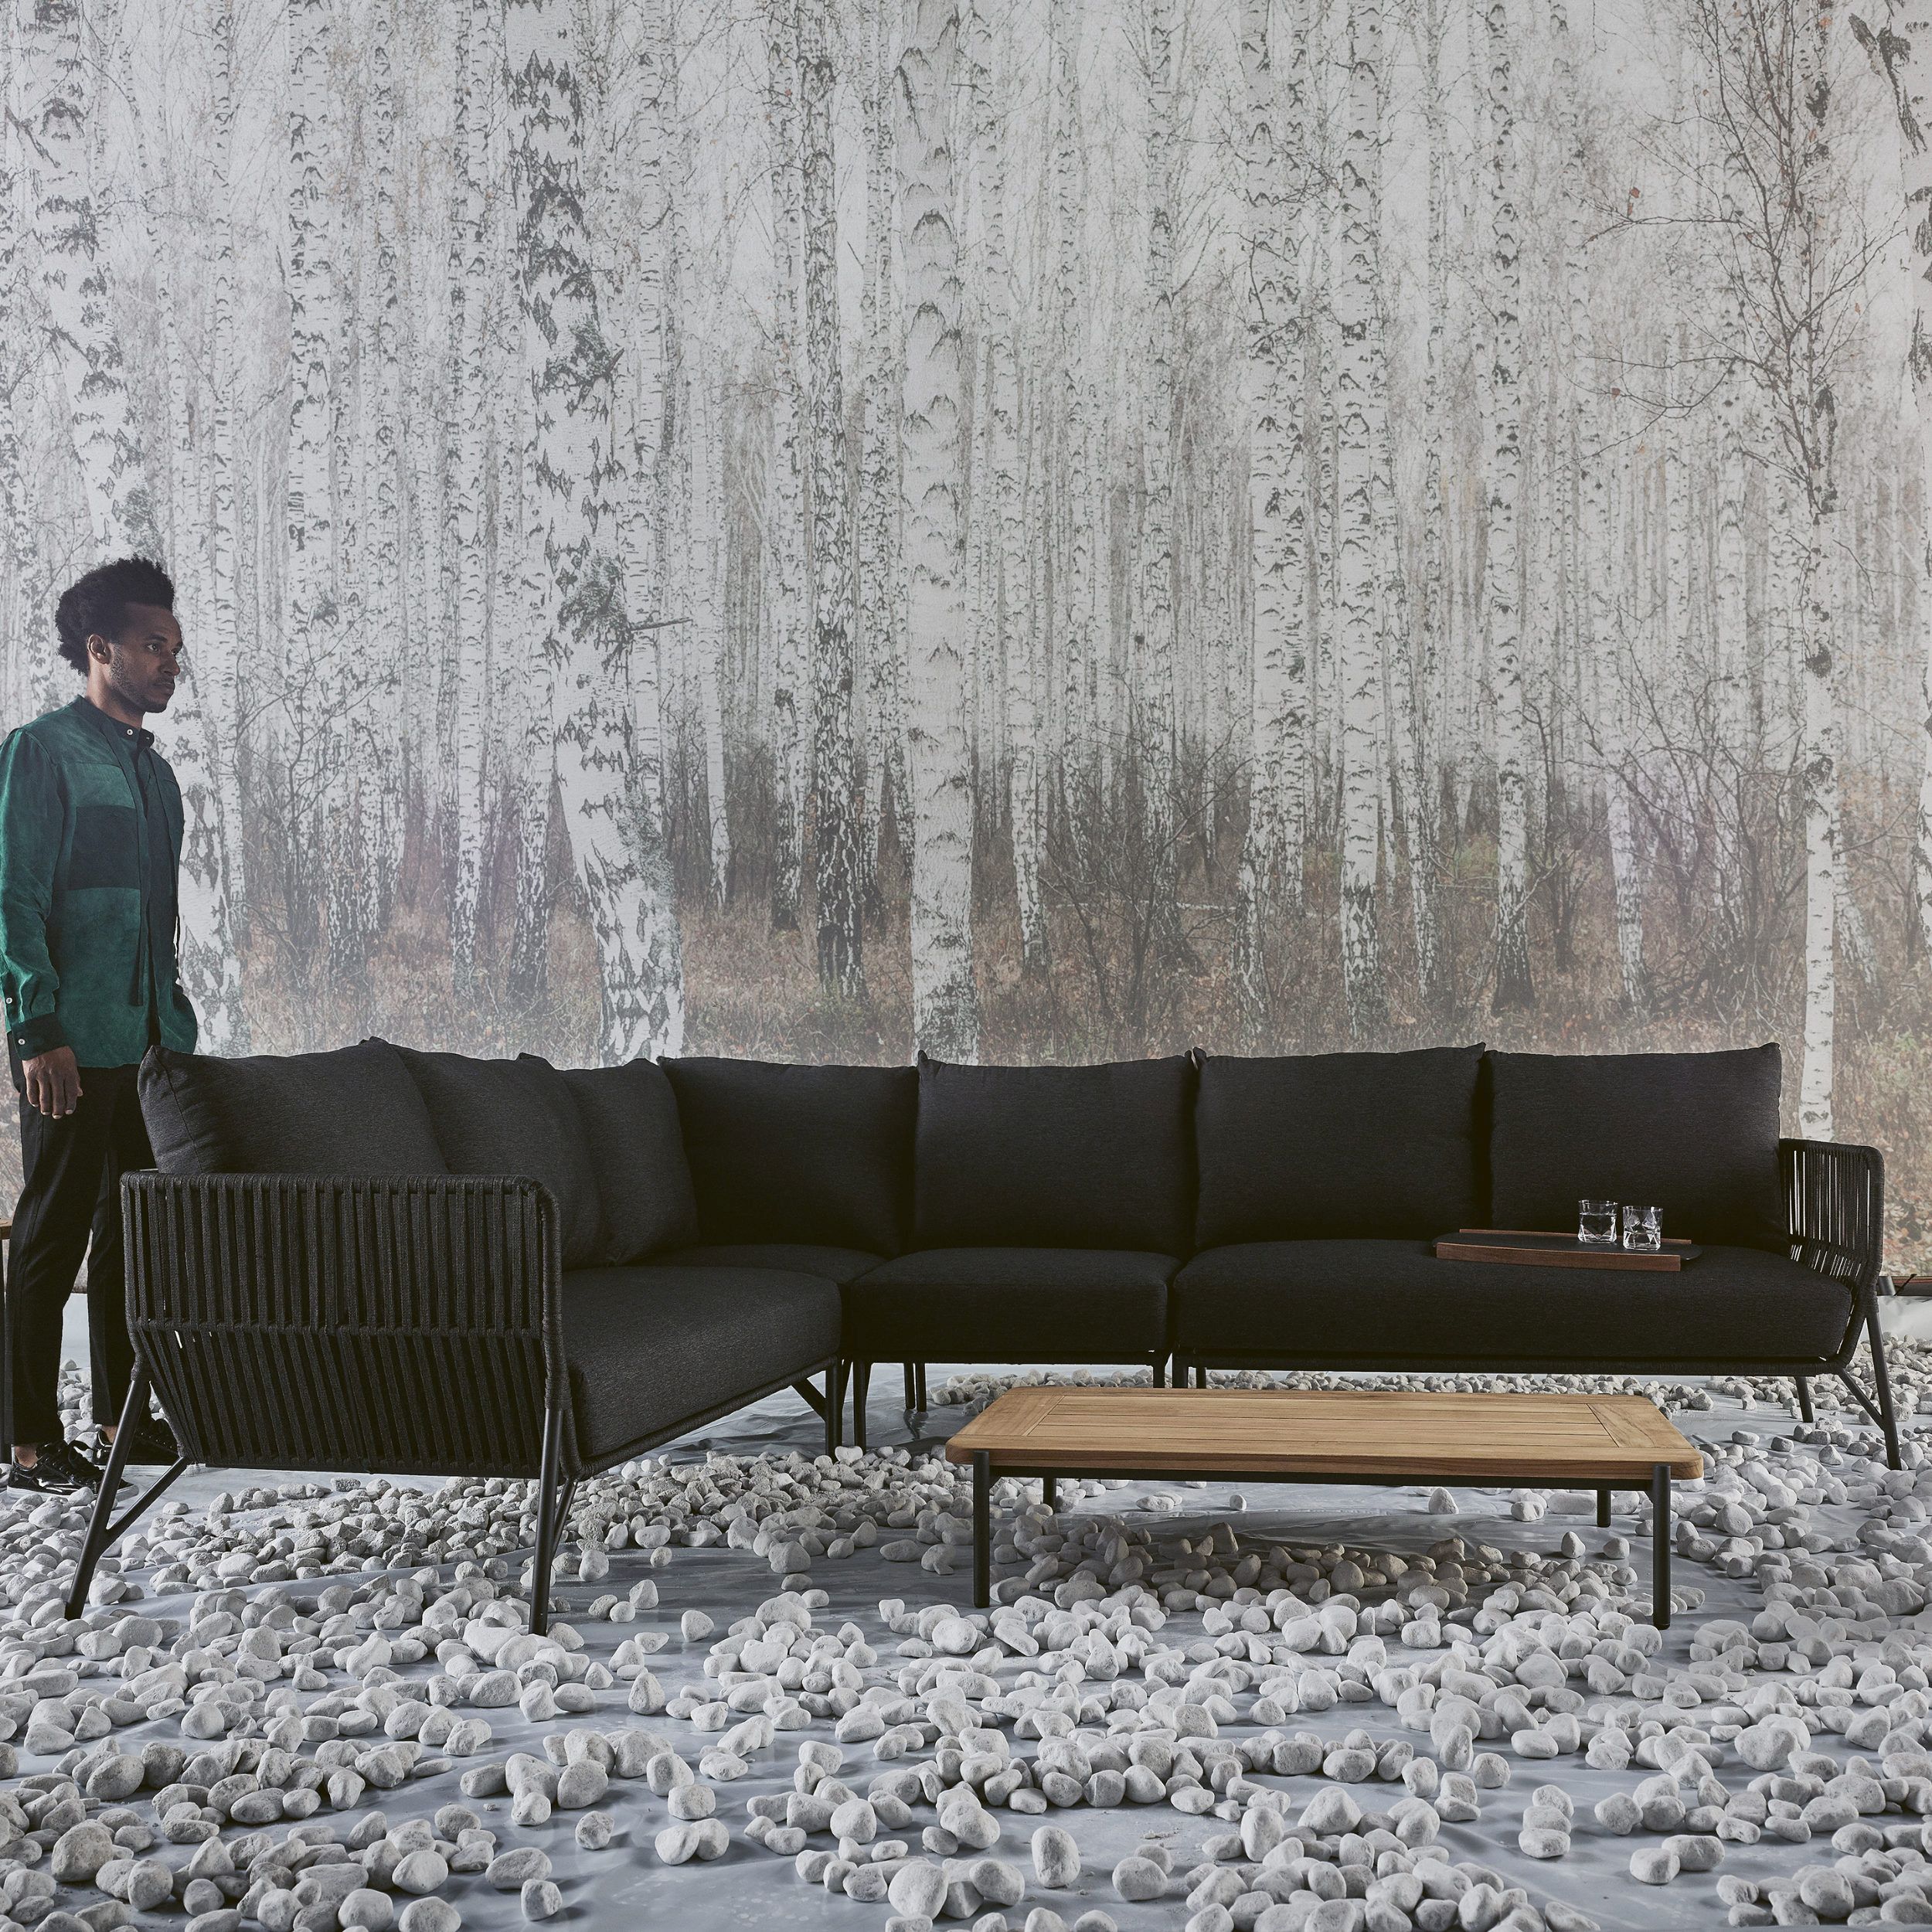 Lounge Idyl Bestille als Milieubild im Freien mit einer Person in grau